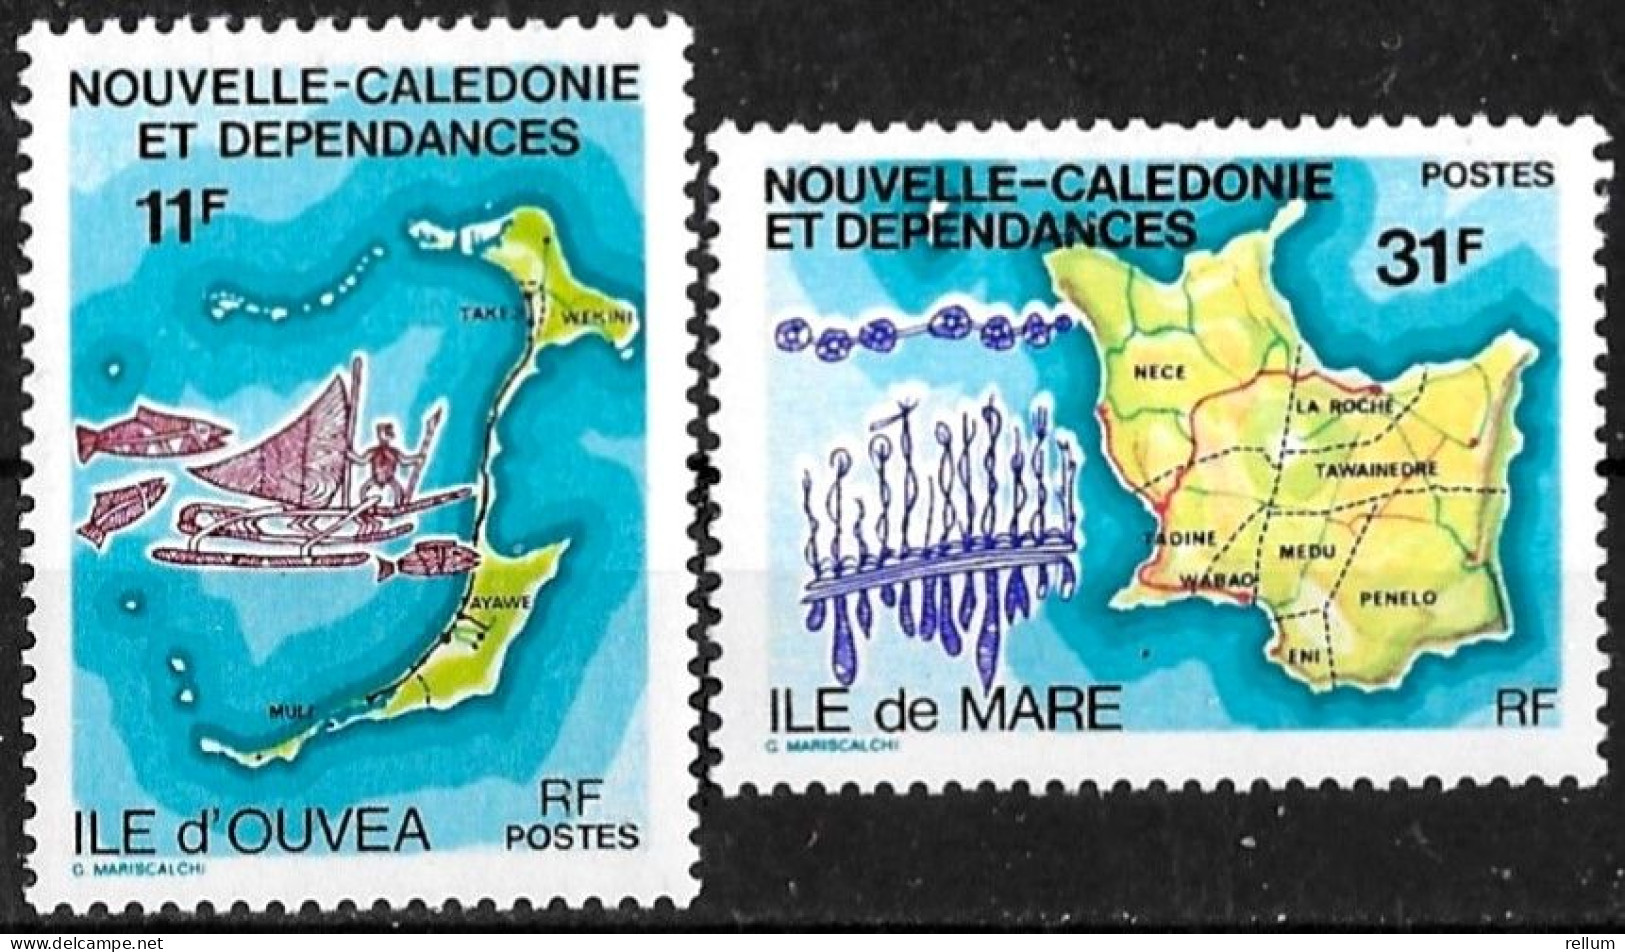 Nouvelle Calédonie 1979 - Yvert N° 426/427 - Michel N° 622/623 ** - Neufs